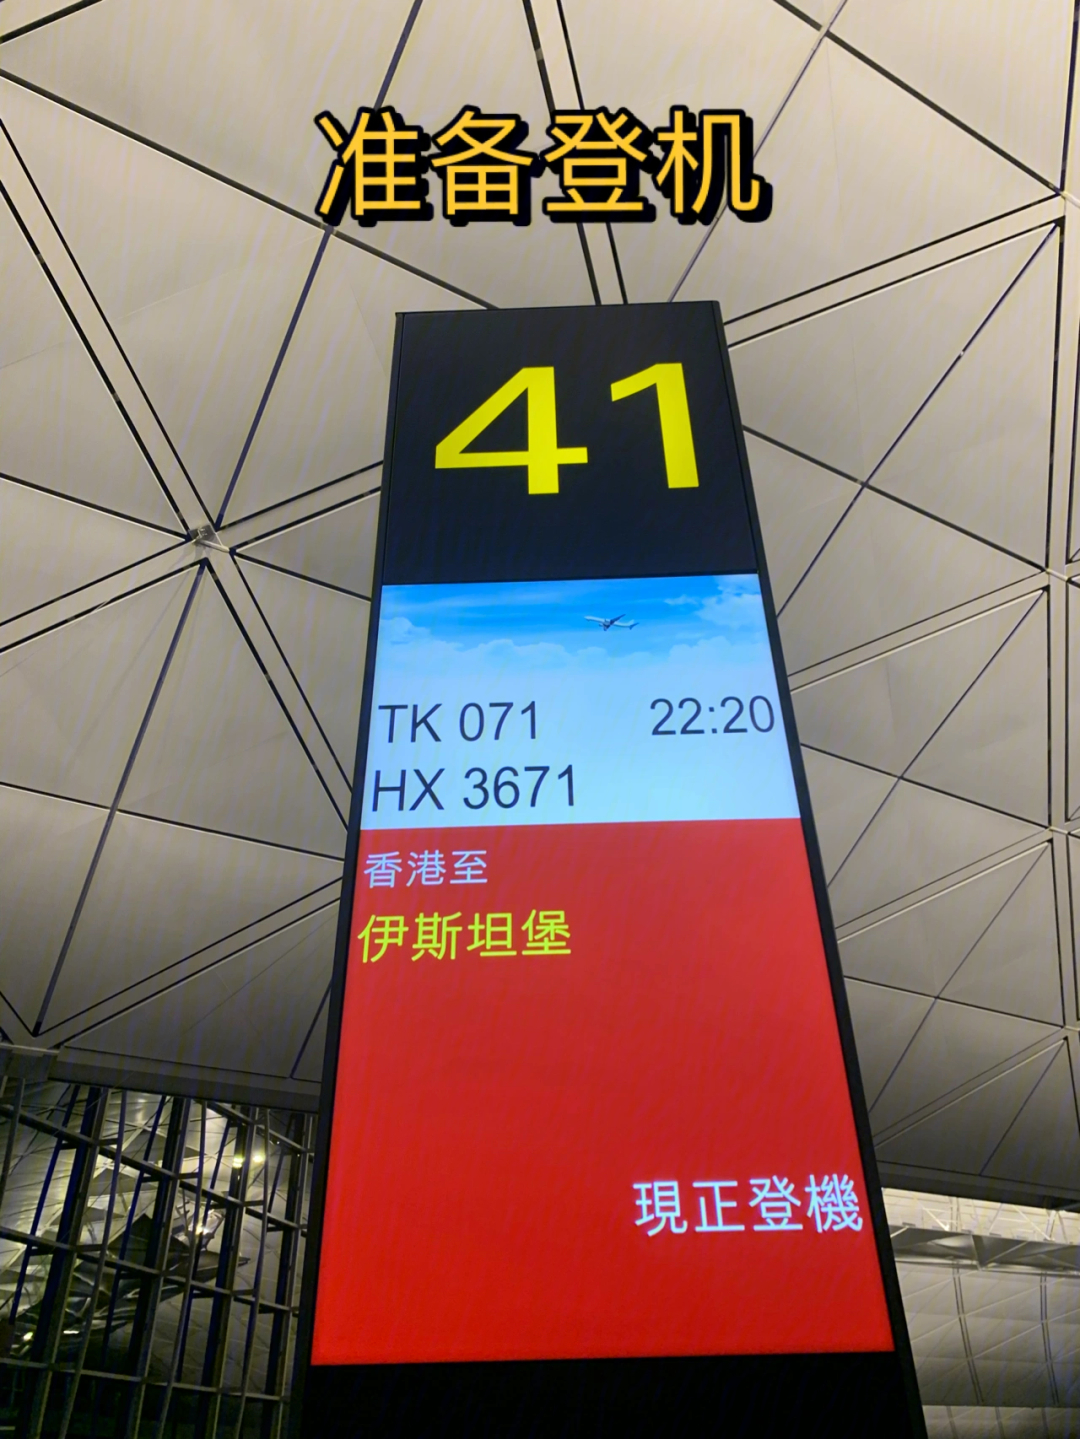 大家好98,没错,又是我,本篇讲的是从香港到伊斯坦布尔的飞行旅程